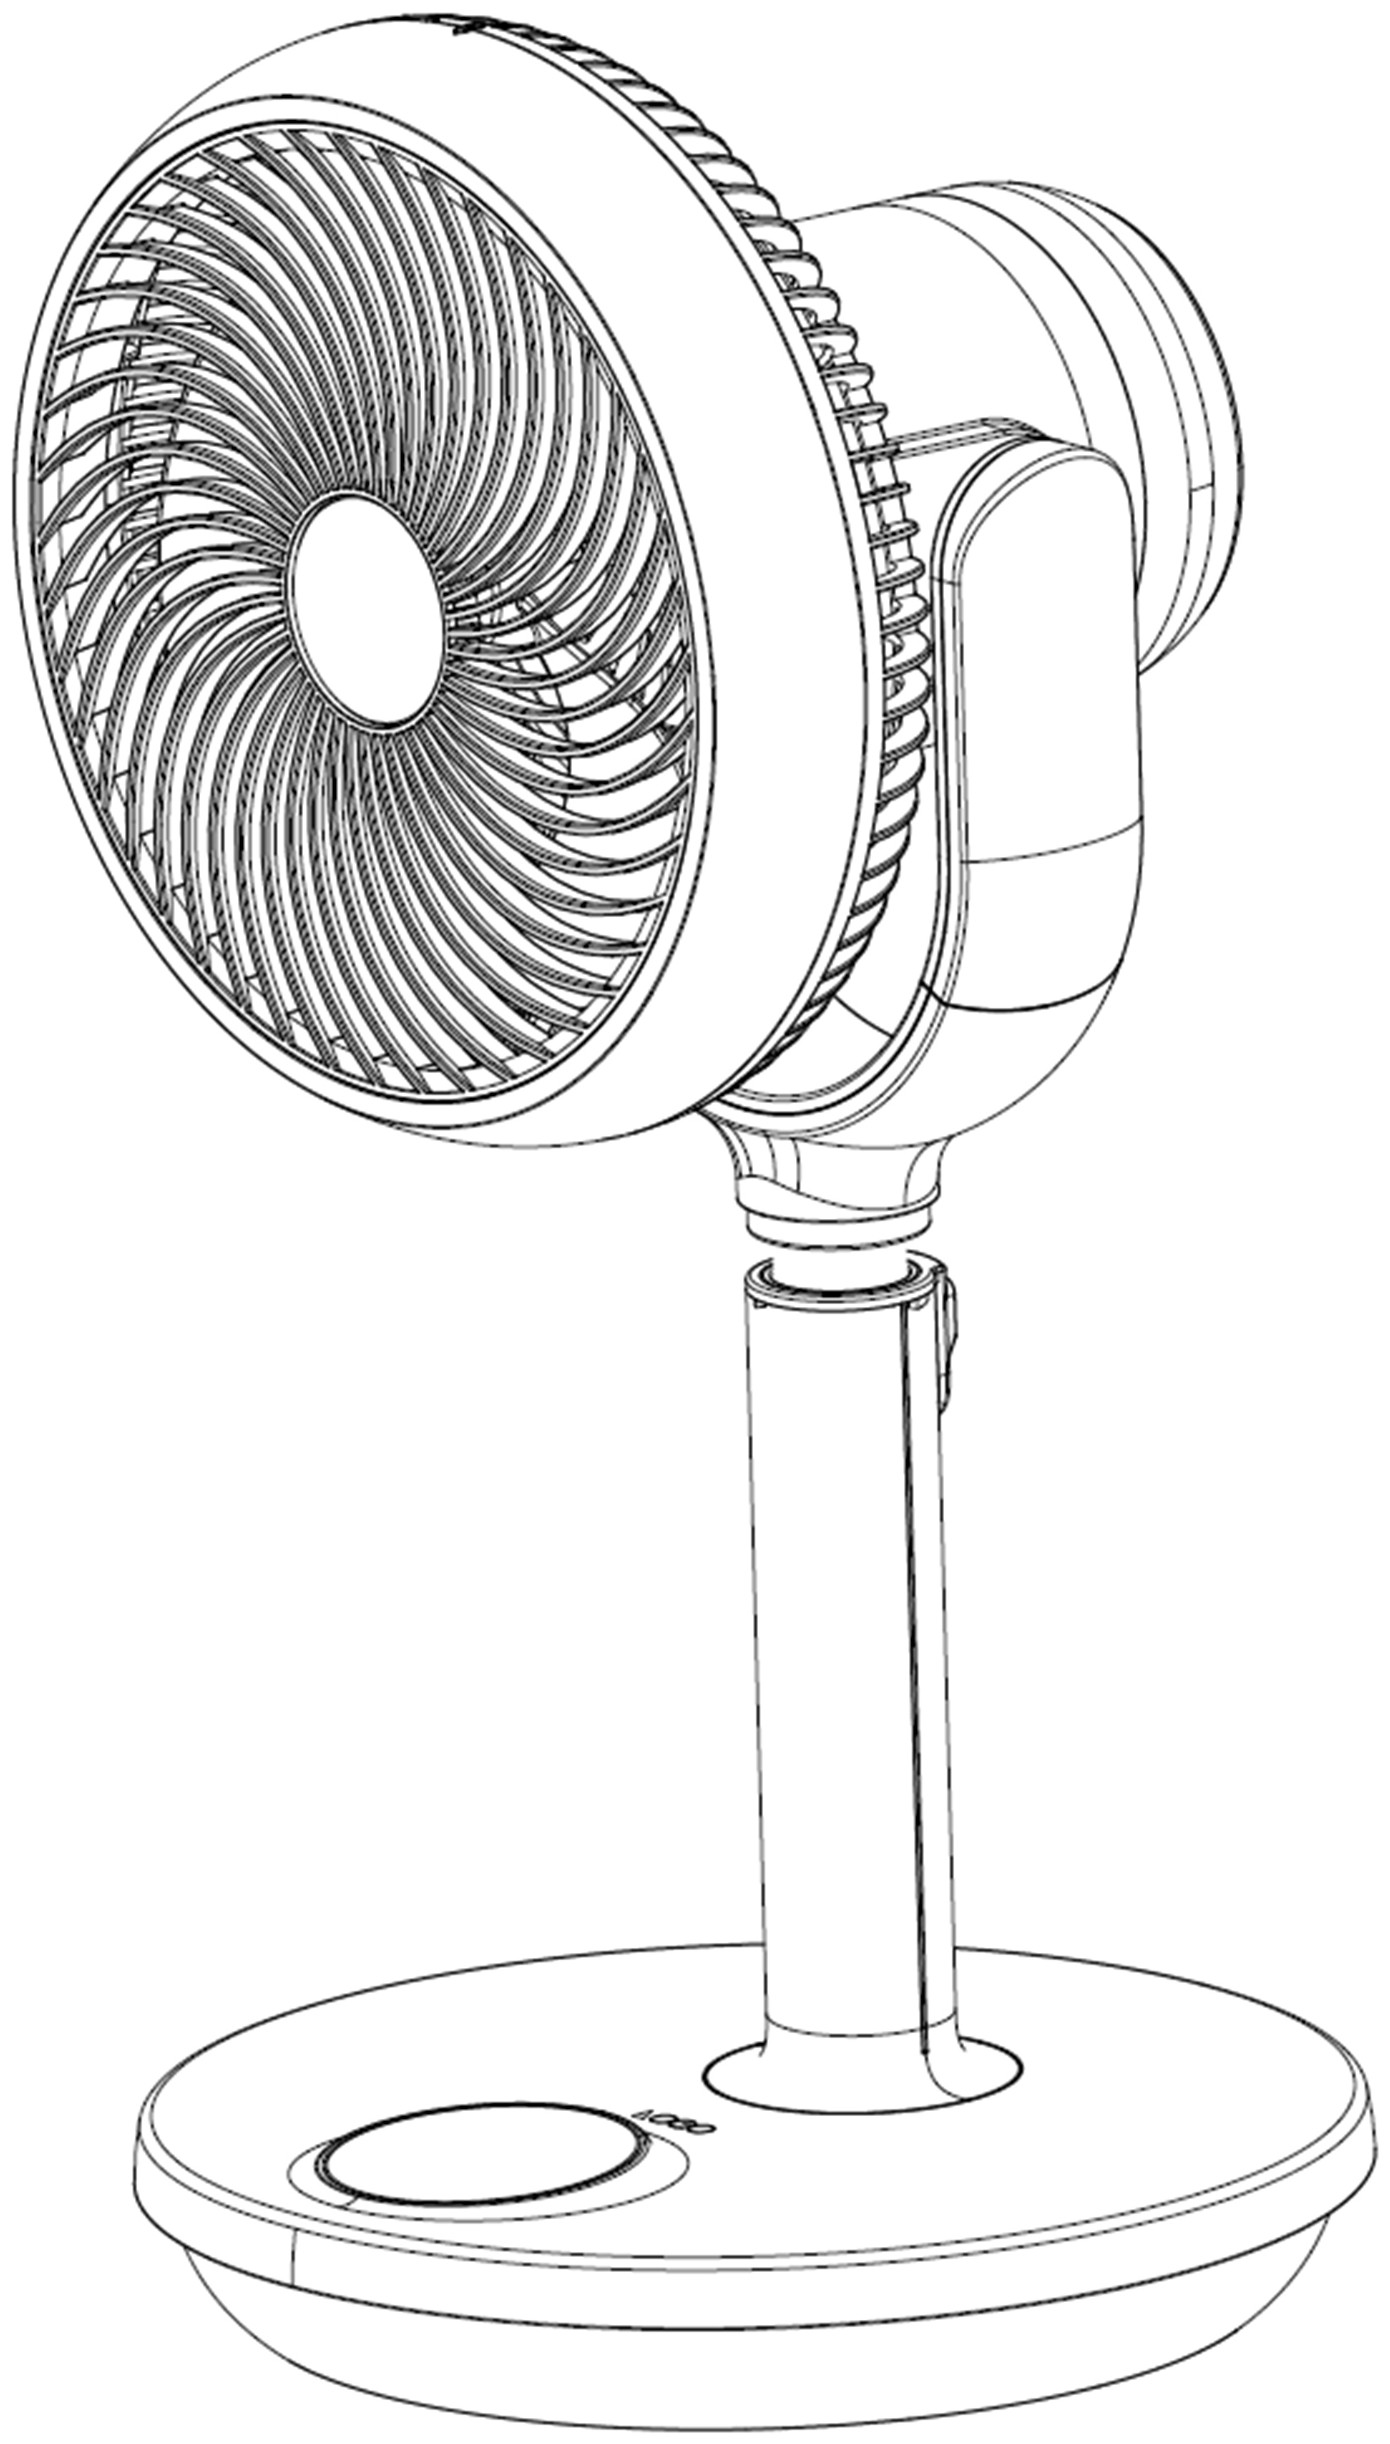 摘要附图摘要1本外观设计产品的名称电风扇(fsh62e)2